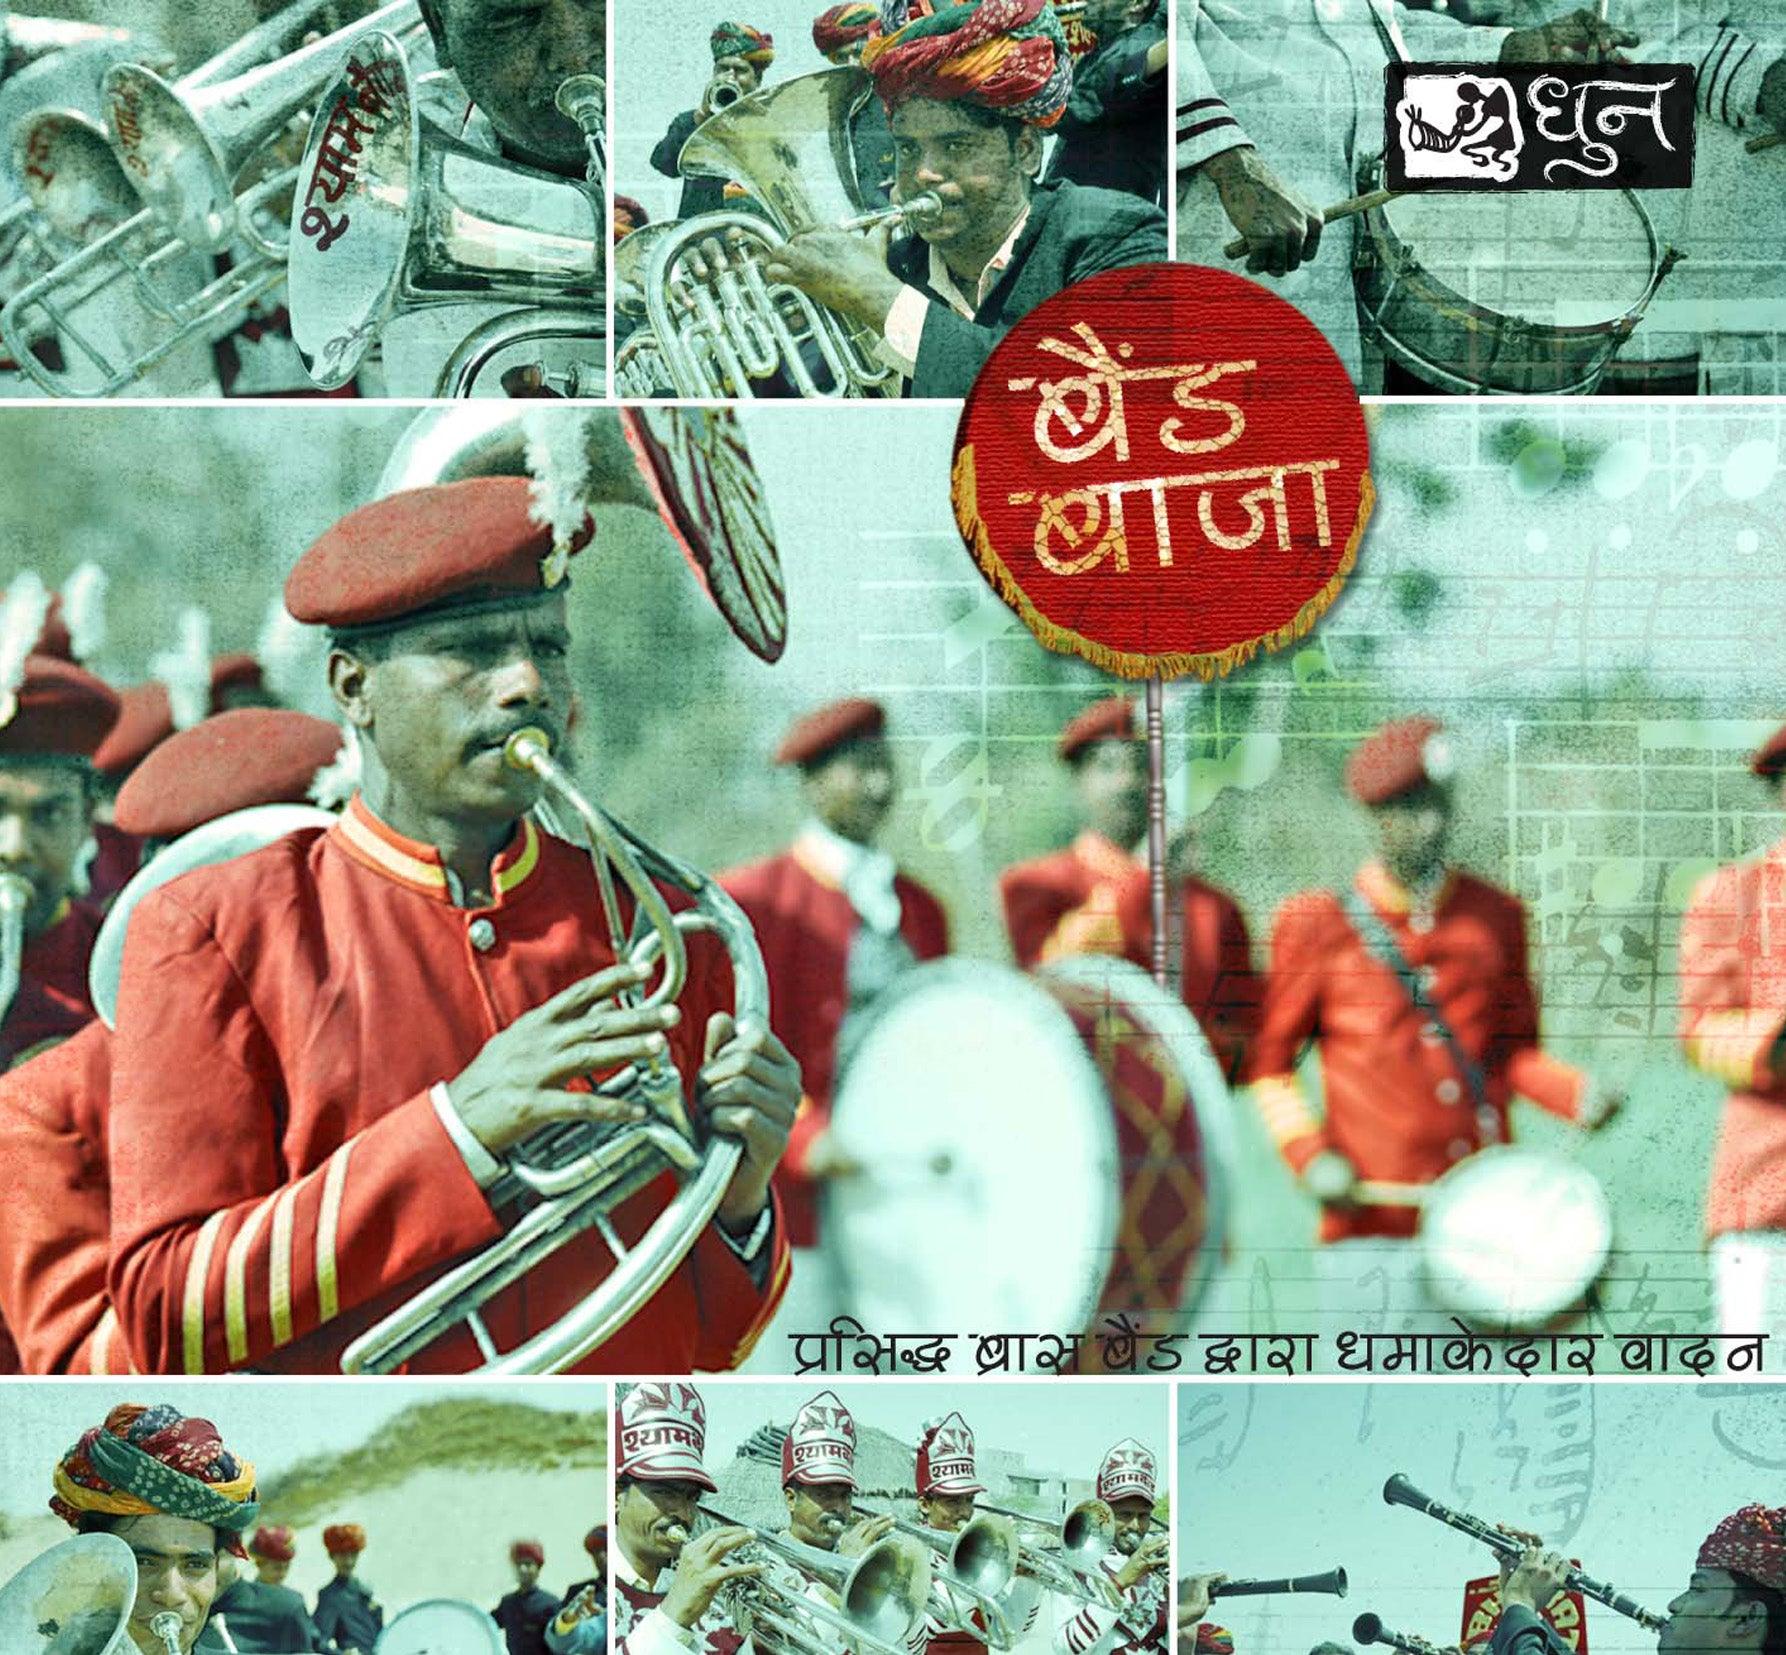 Band Baja Rajasthani Music CD Rajasthani Songs - DeKulture DKM-RJ-014-M